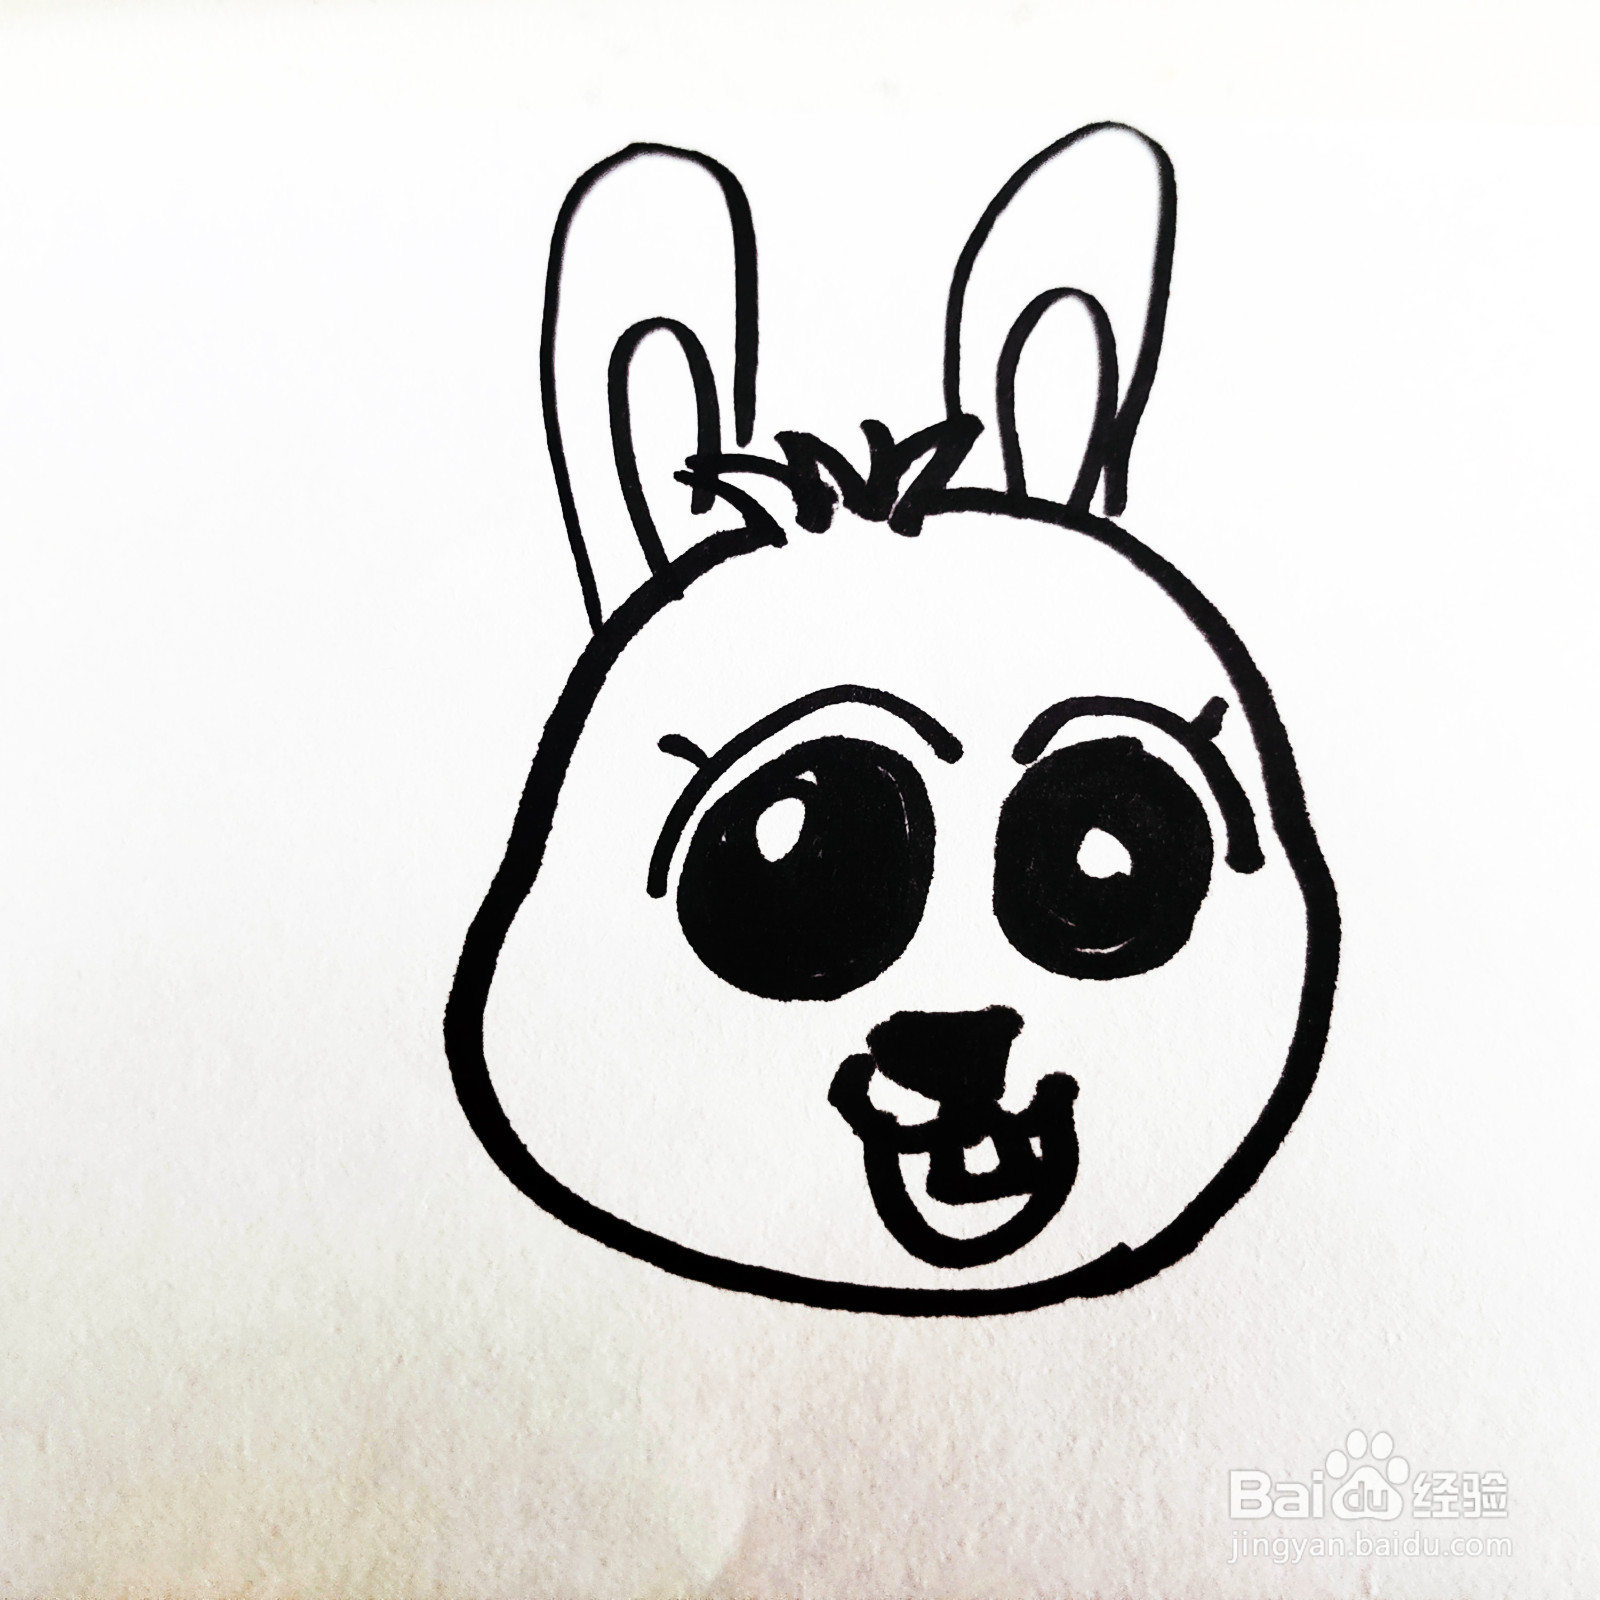 如何来画一只卡通大眼睛兔子简笔画呢?